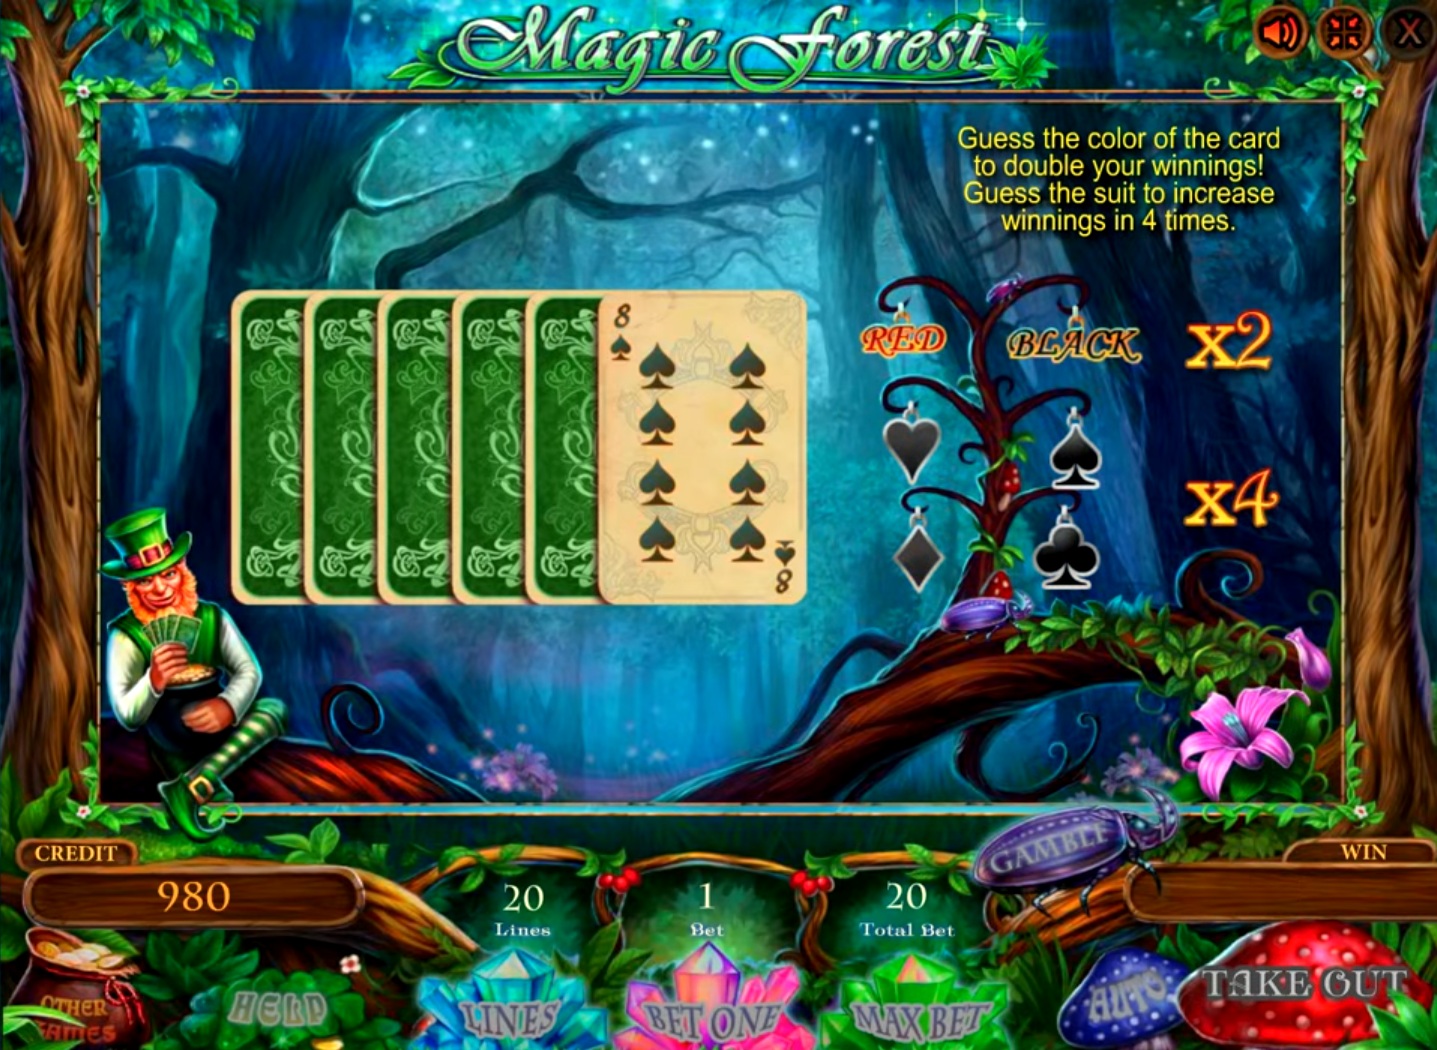 Bavarian forest игровой автомат официальный сайт пин ап казино играть онлайн